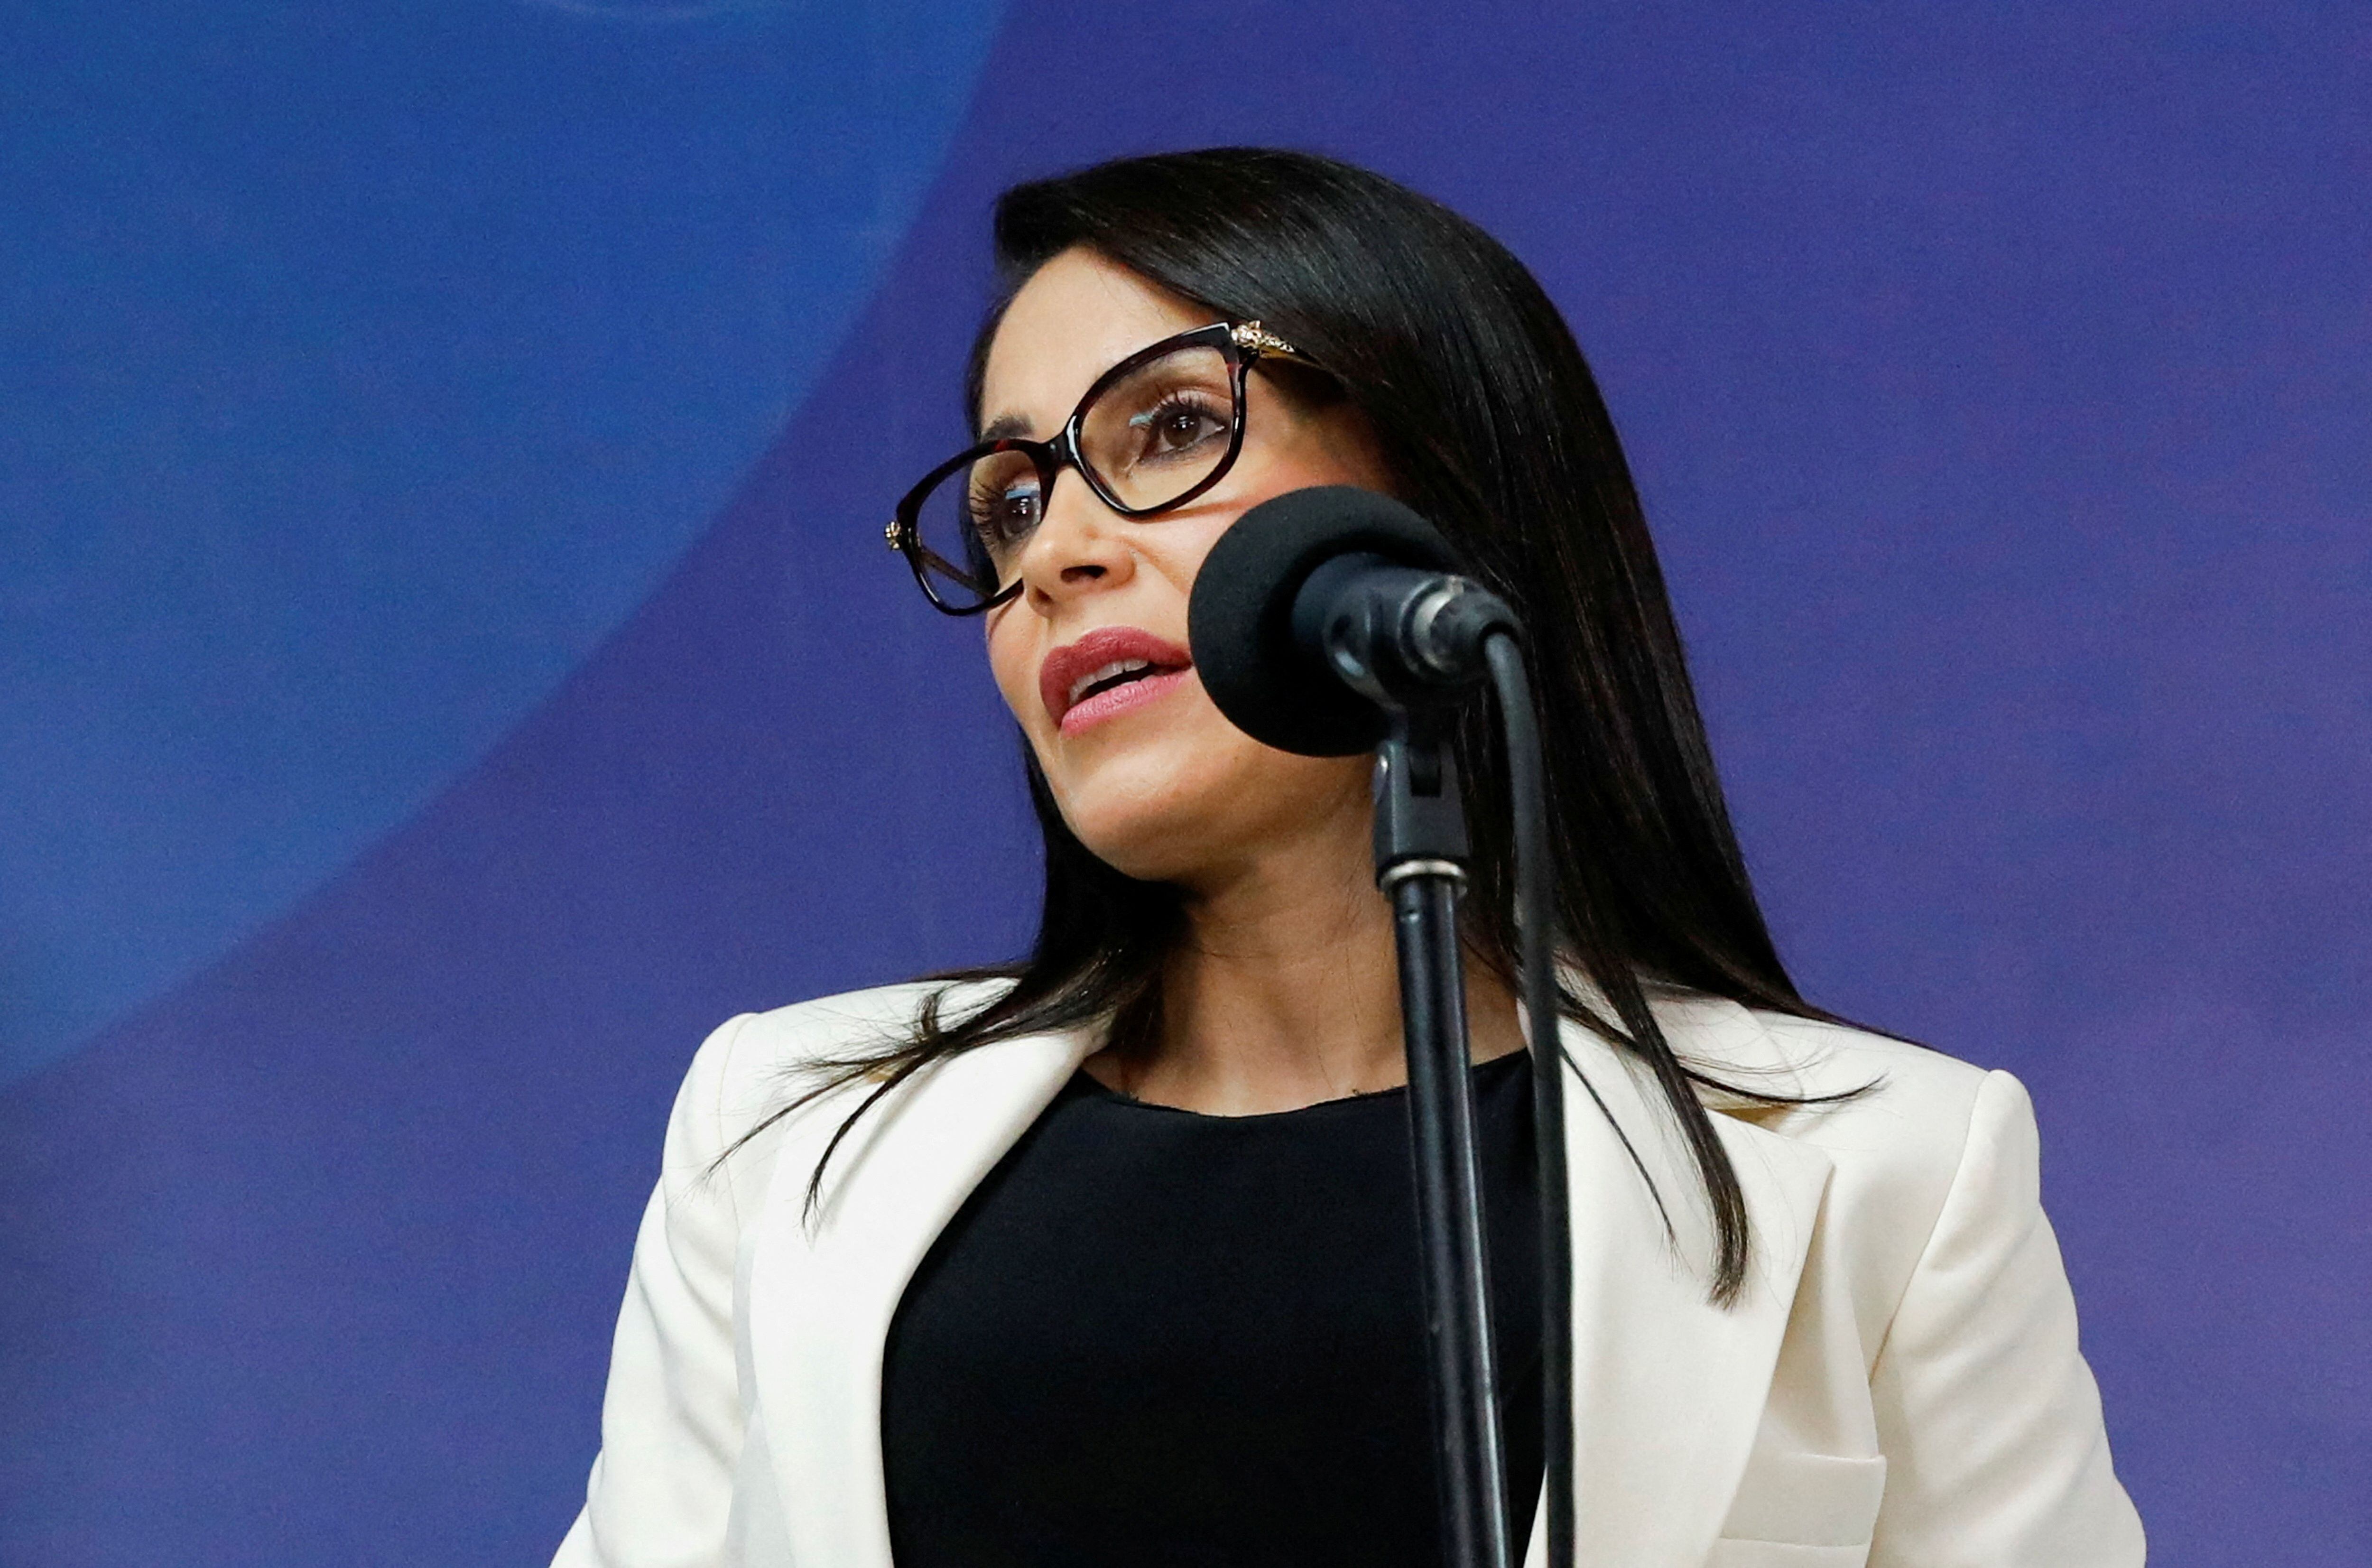 La candidata Luisa González dijo que no tomará partido sobre las dictaduras de la región. (REUTERS/Karen Toro)